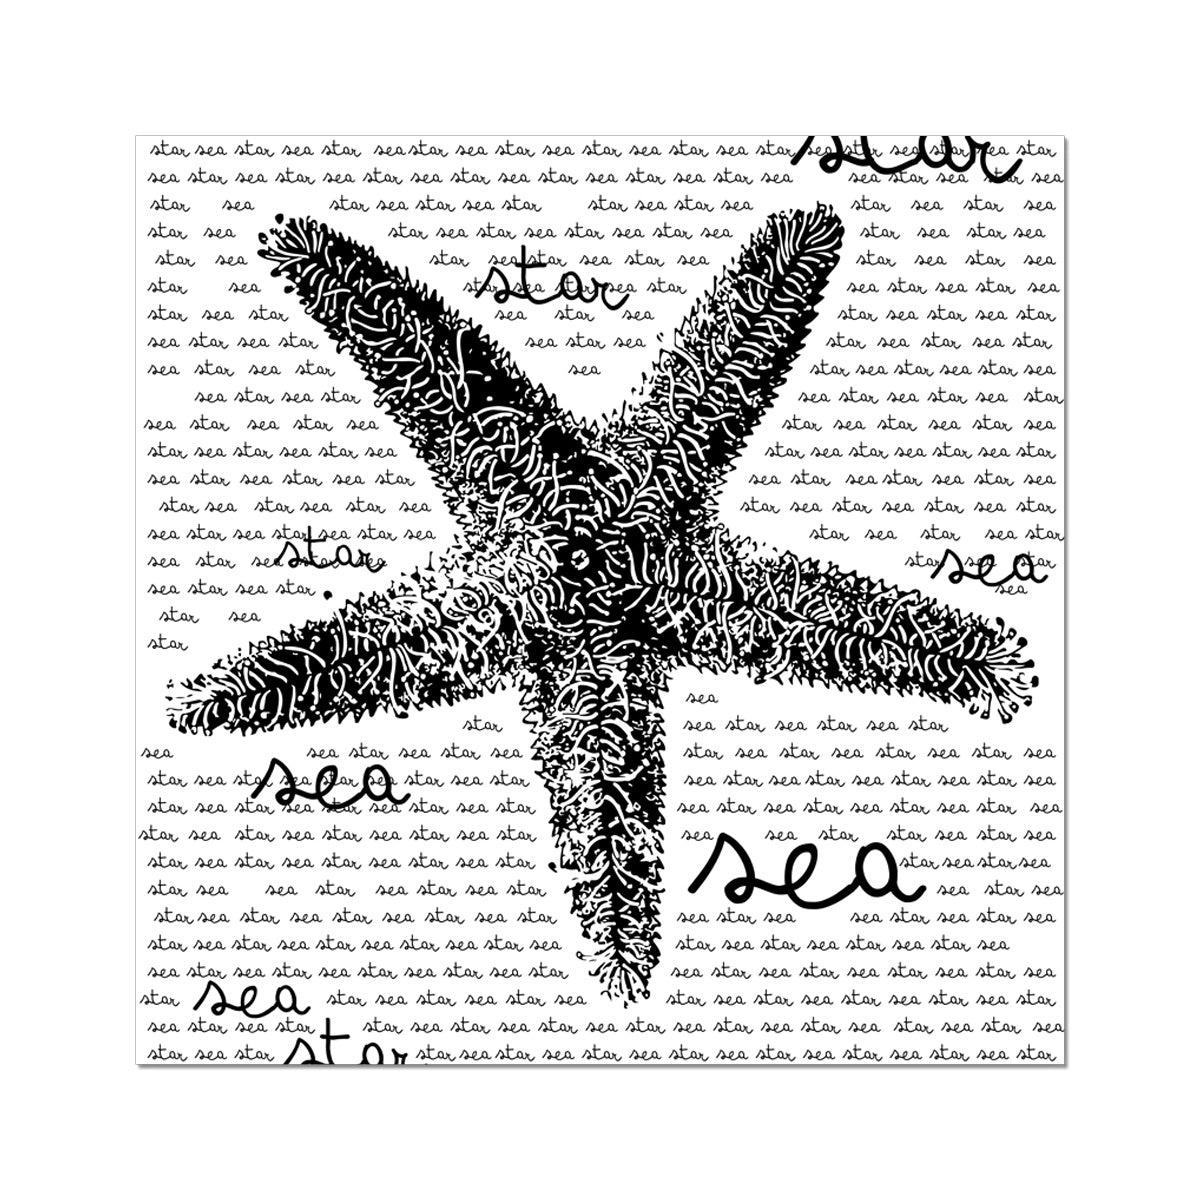 AQUA B&W - 08 - Sea Star - Wall Art Poster